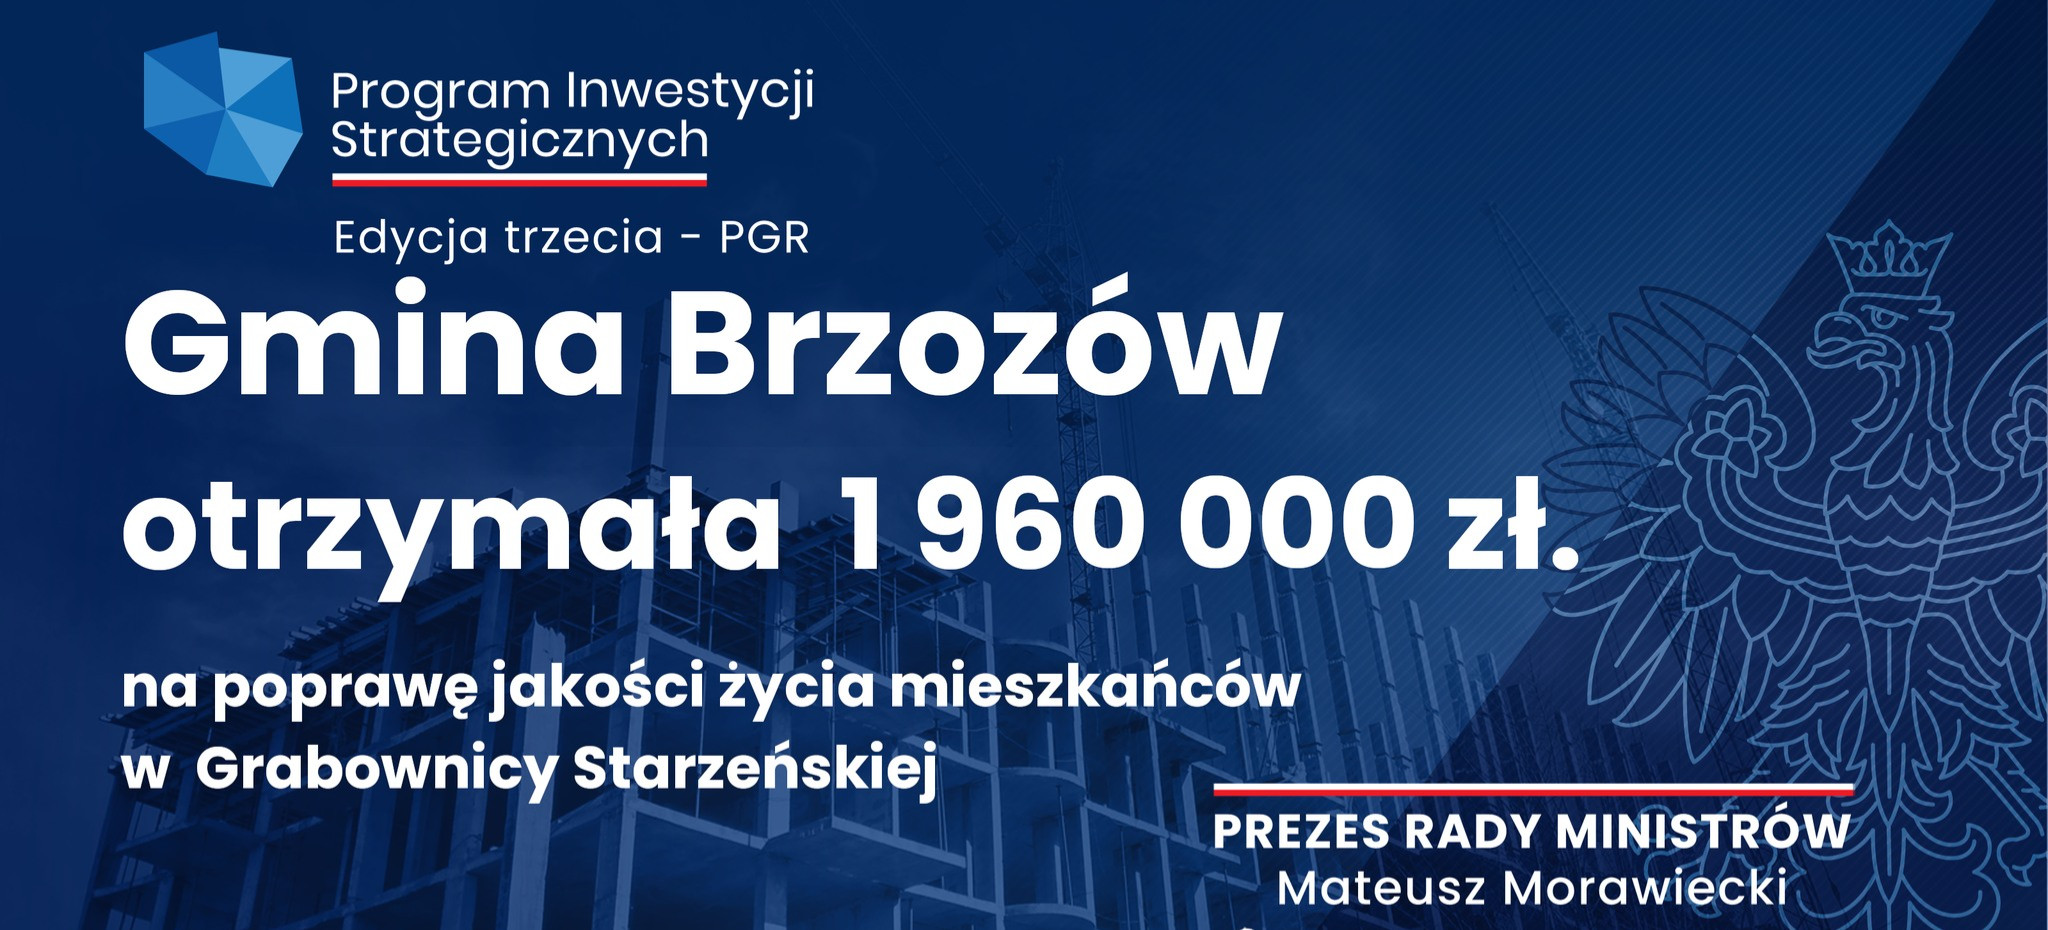 Gmina Brzozów otrzymała prawie 2 mln zł